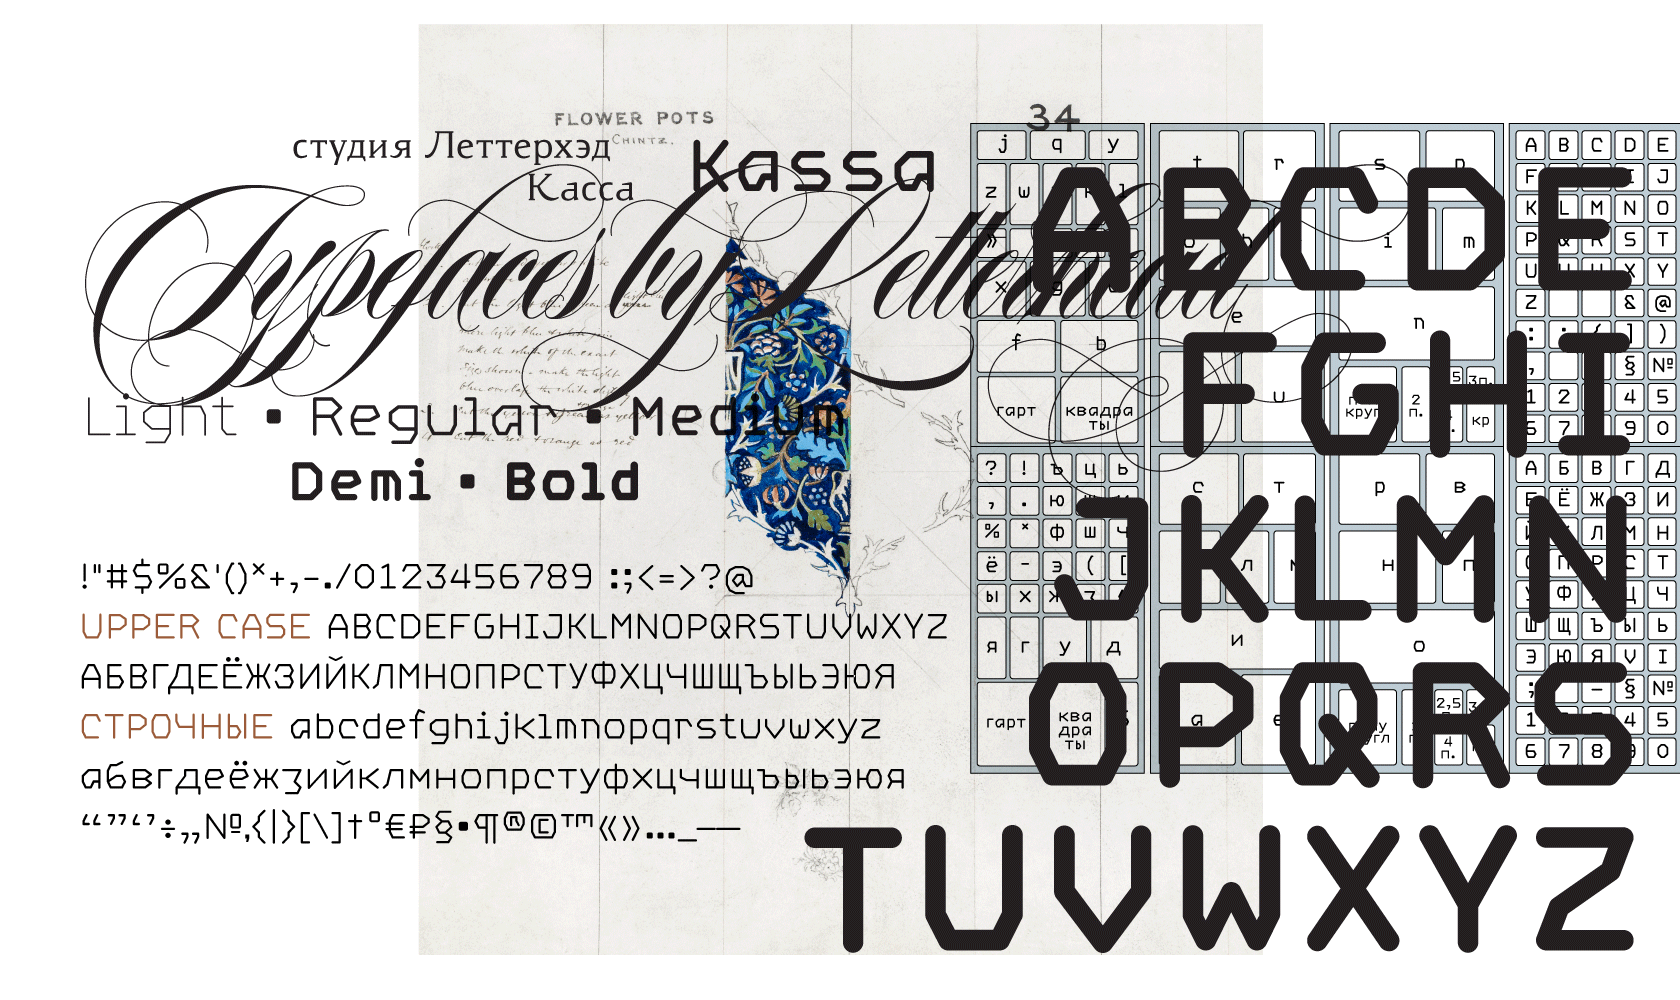 Шрифты из телеграмма на русском языке фото 20